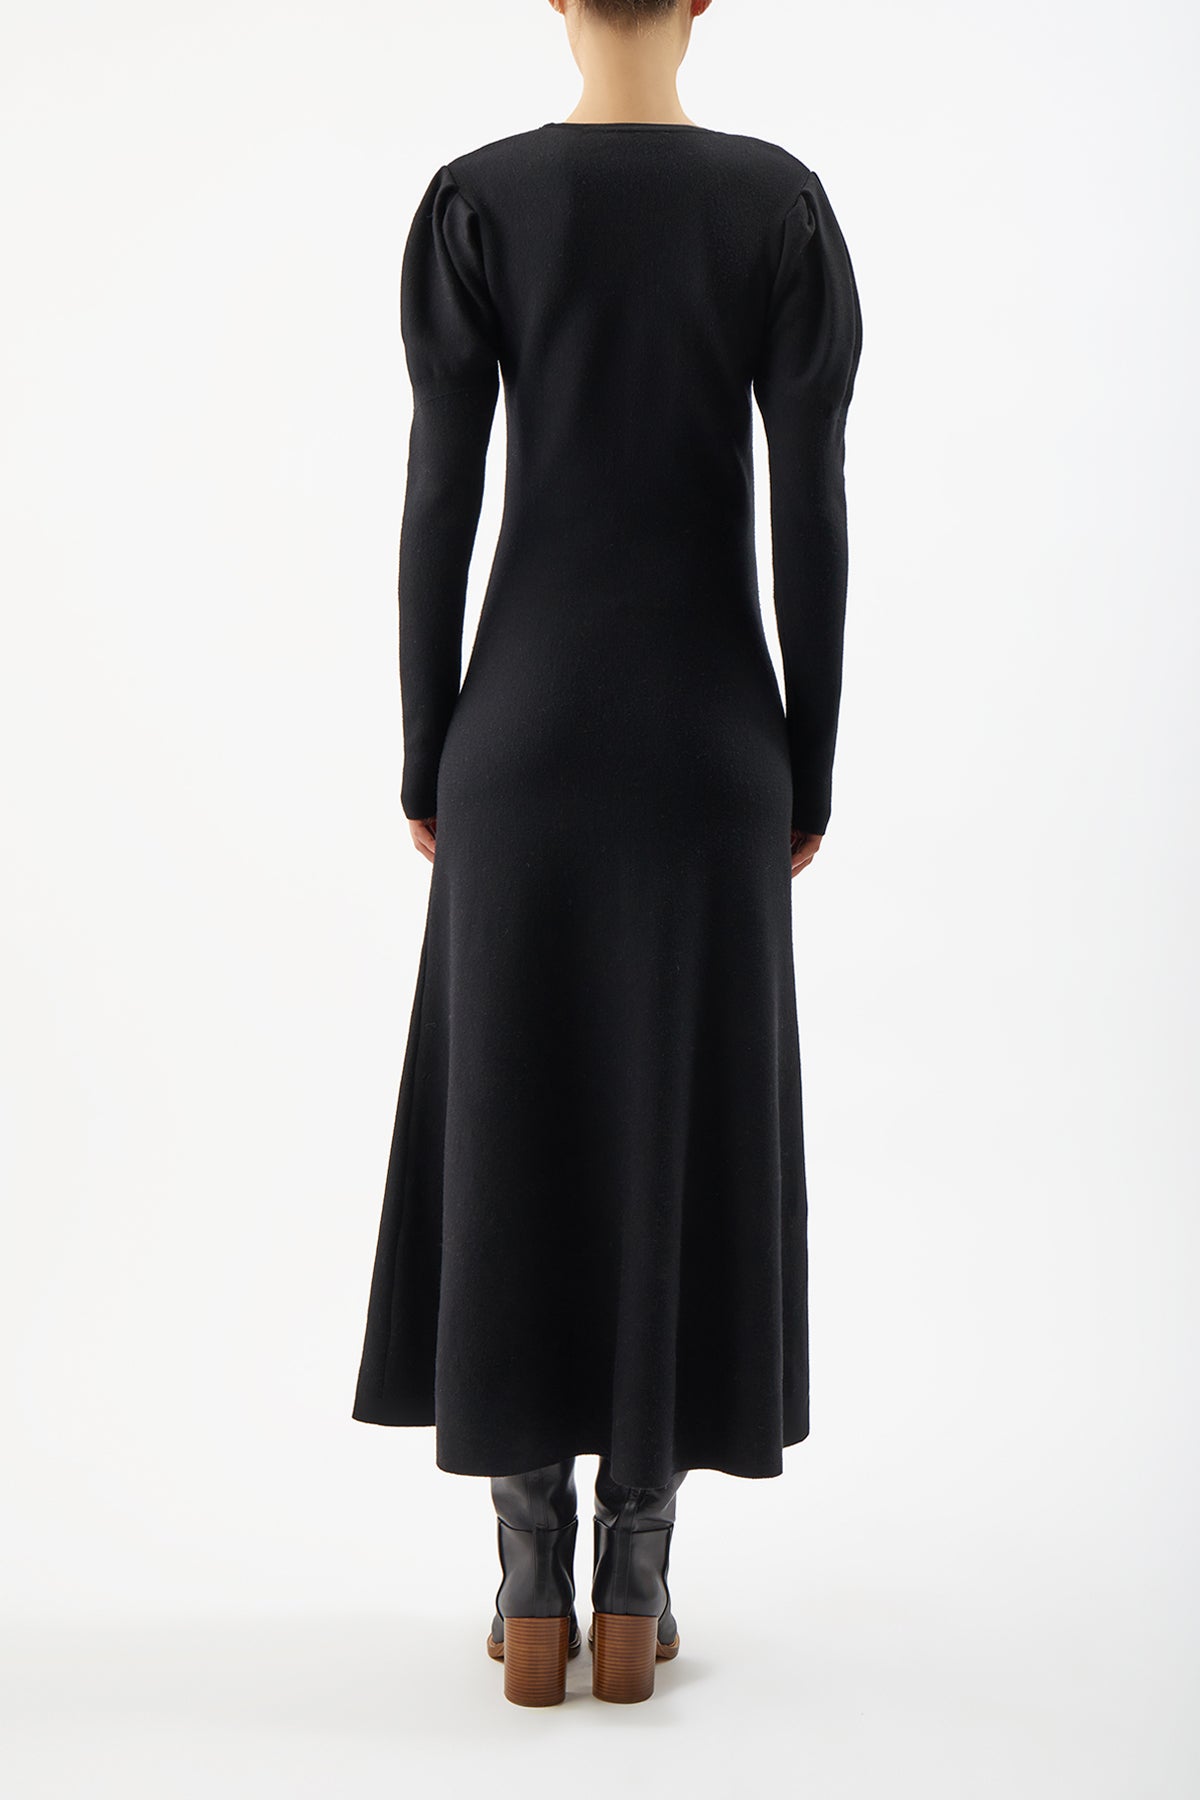 Hannah Knit Dress in Black Merino Wool